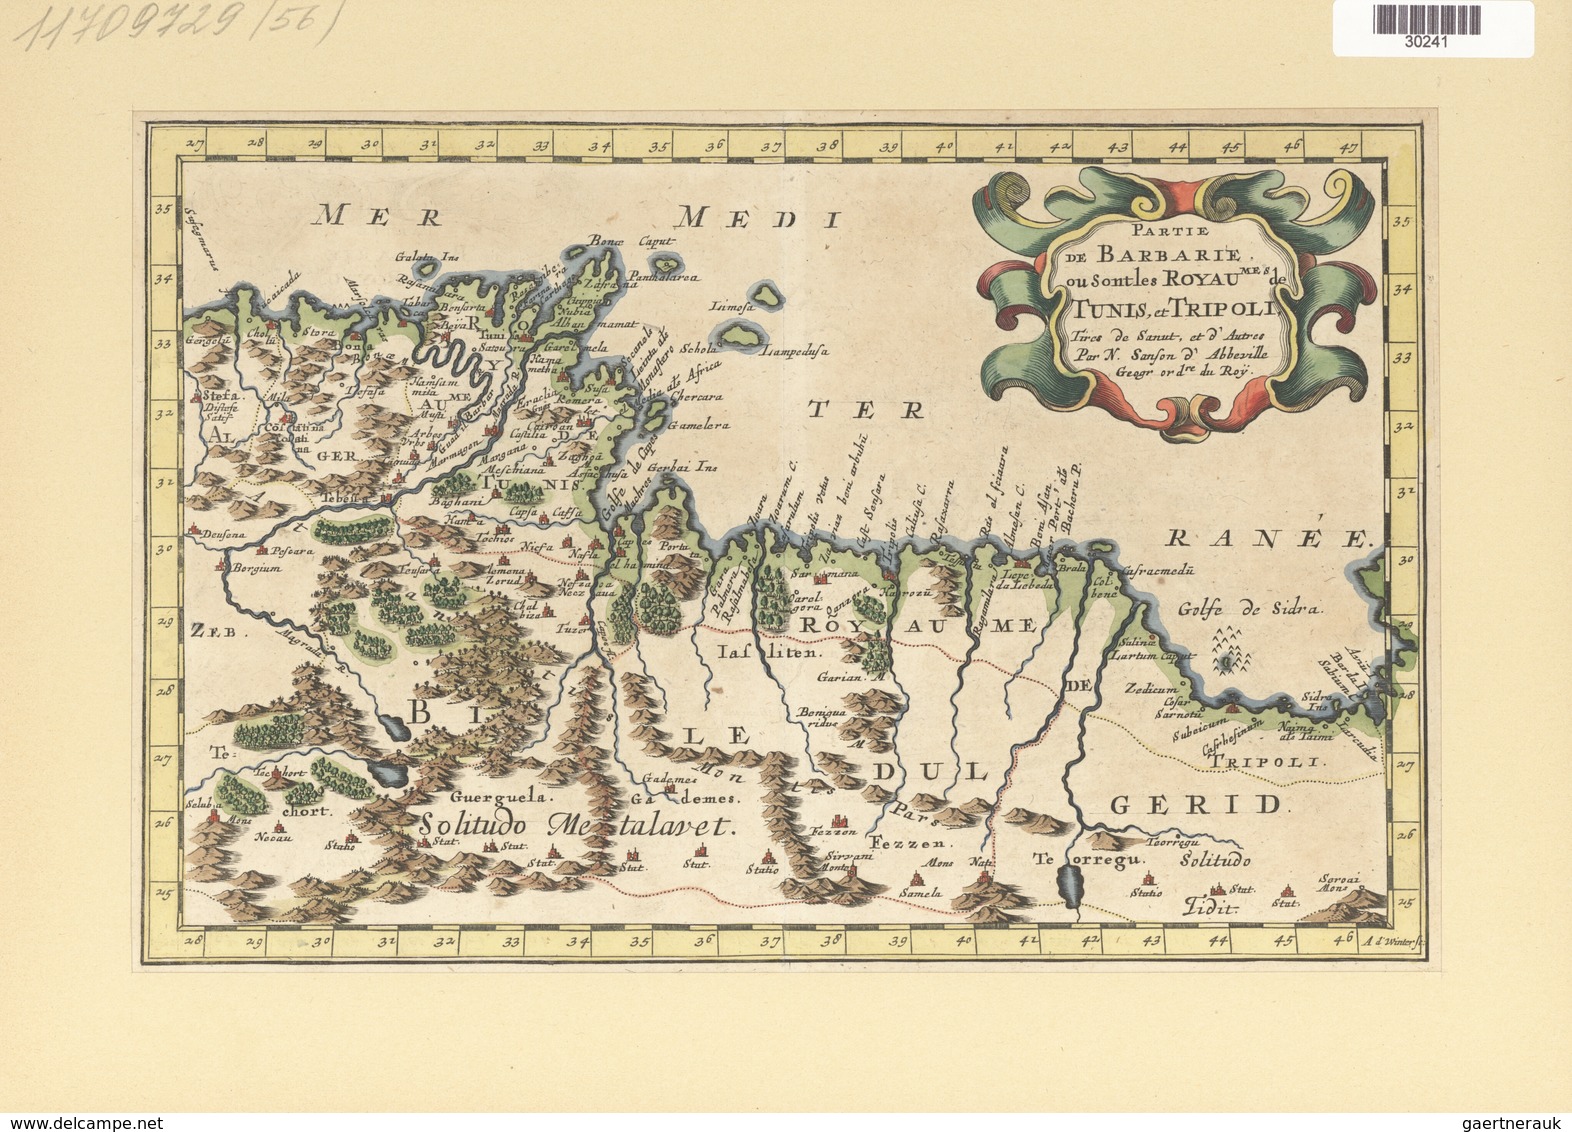 Landkarten Und Stiche: 1734. Partie De Barbarie, Ou Sont Les Royaumes De Tunis, Et Tripoli; By Nicol - Geographie